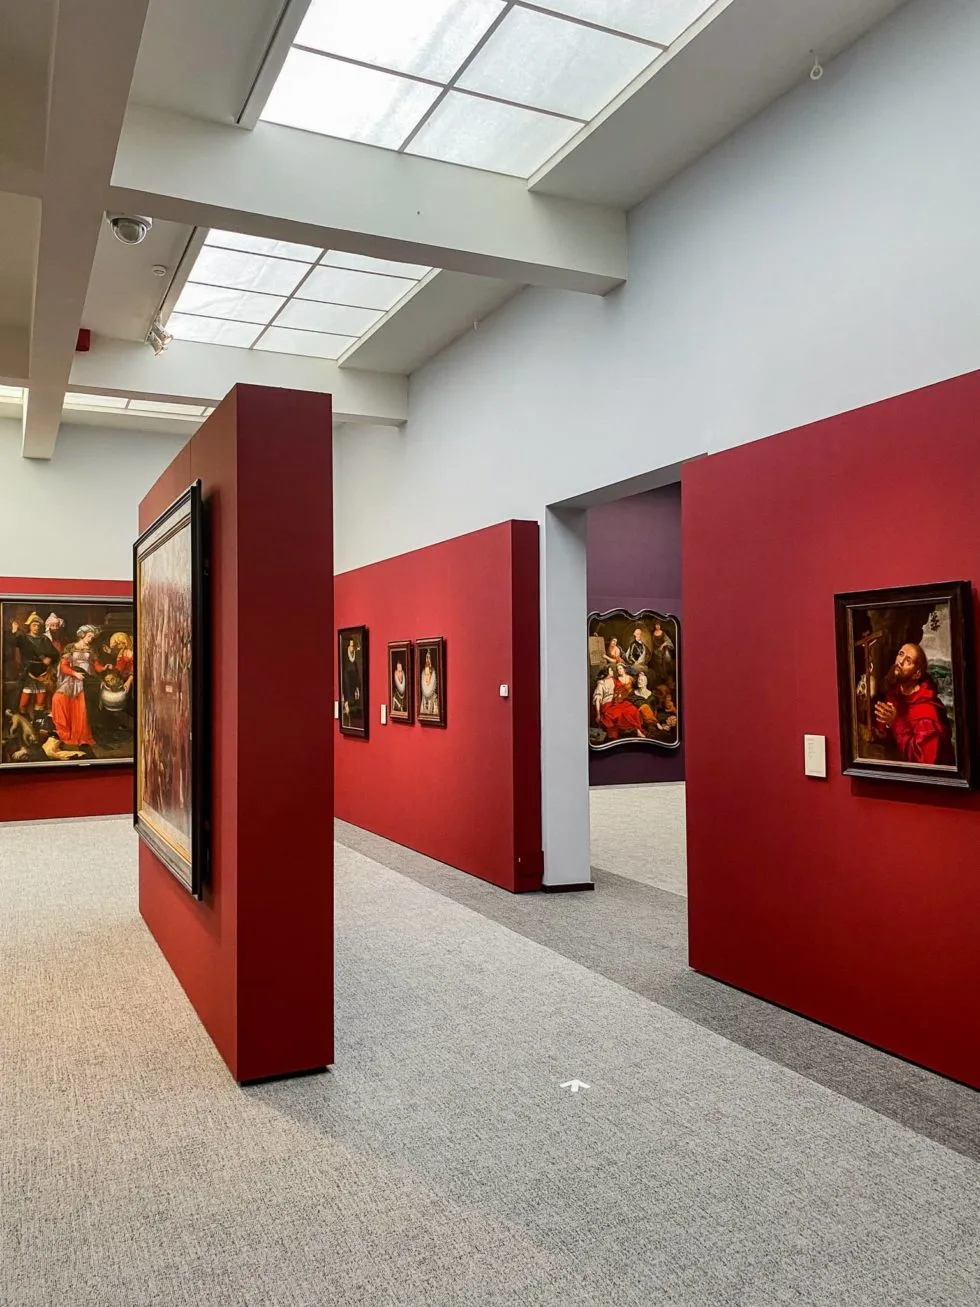 Une jolie salle aux murs rouges propose des oeuvres de primitifs flamands dans le musée Groeninge de Bruges. Un incontournable lors de votre city trip dans la Venise du Nord